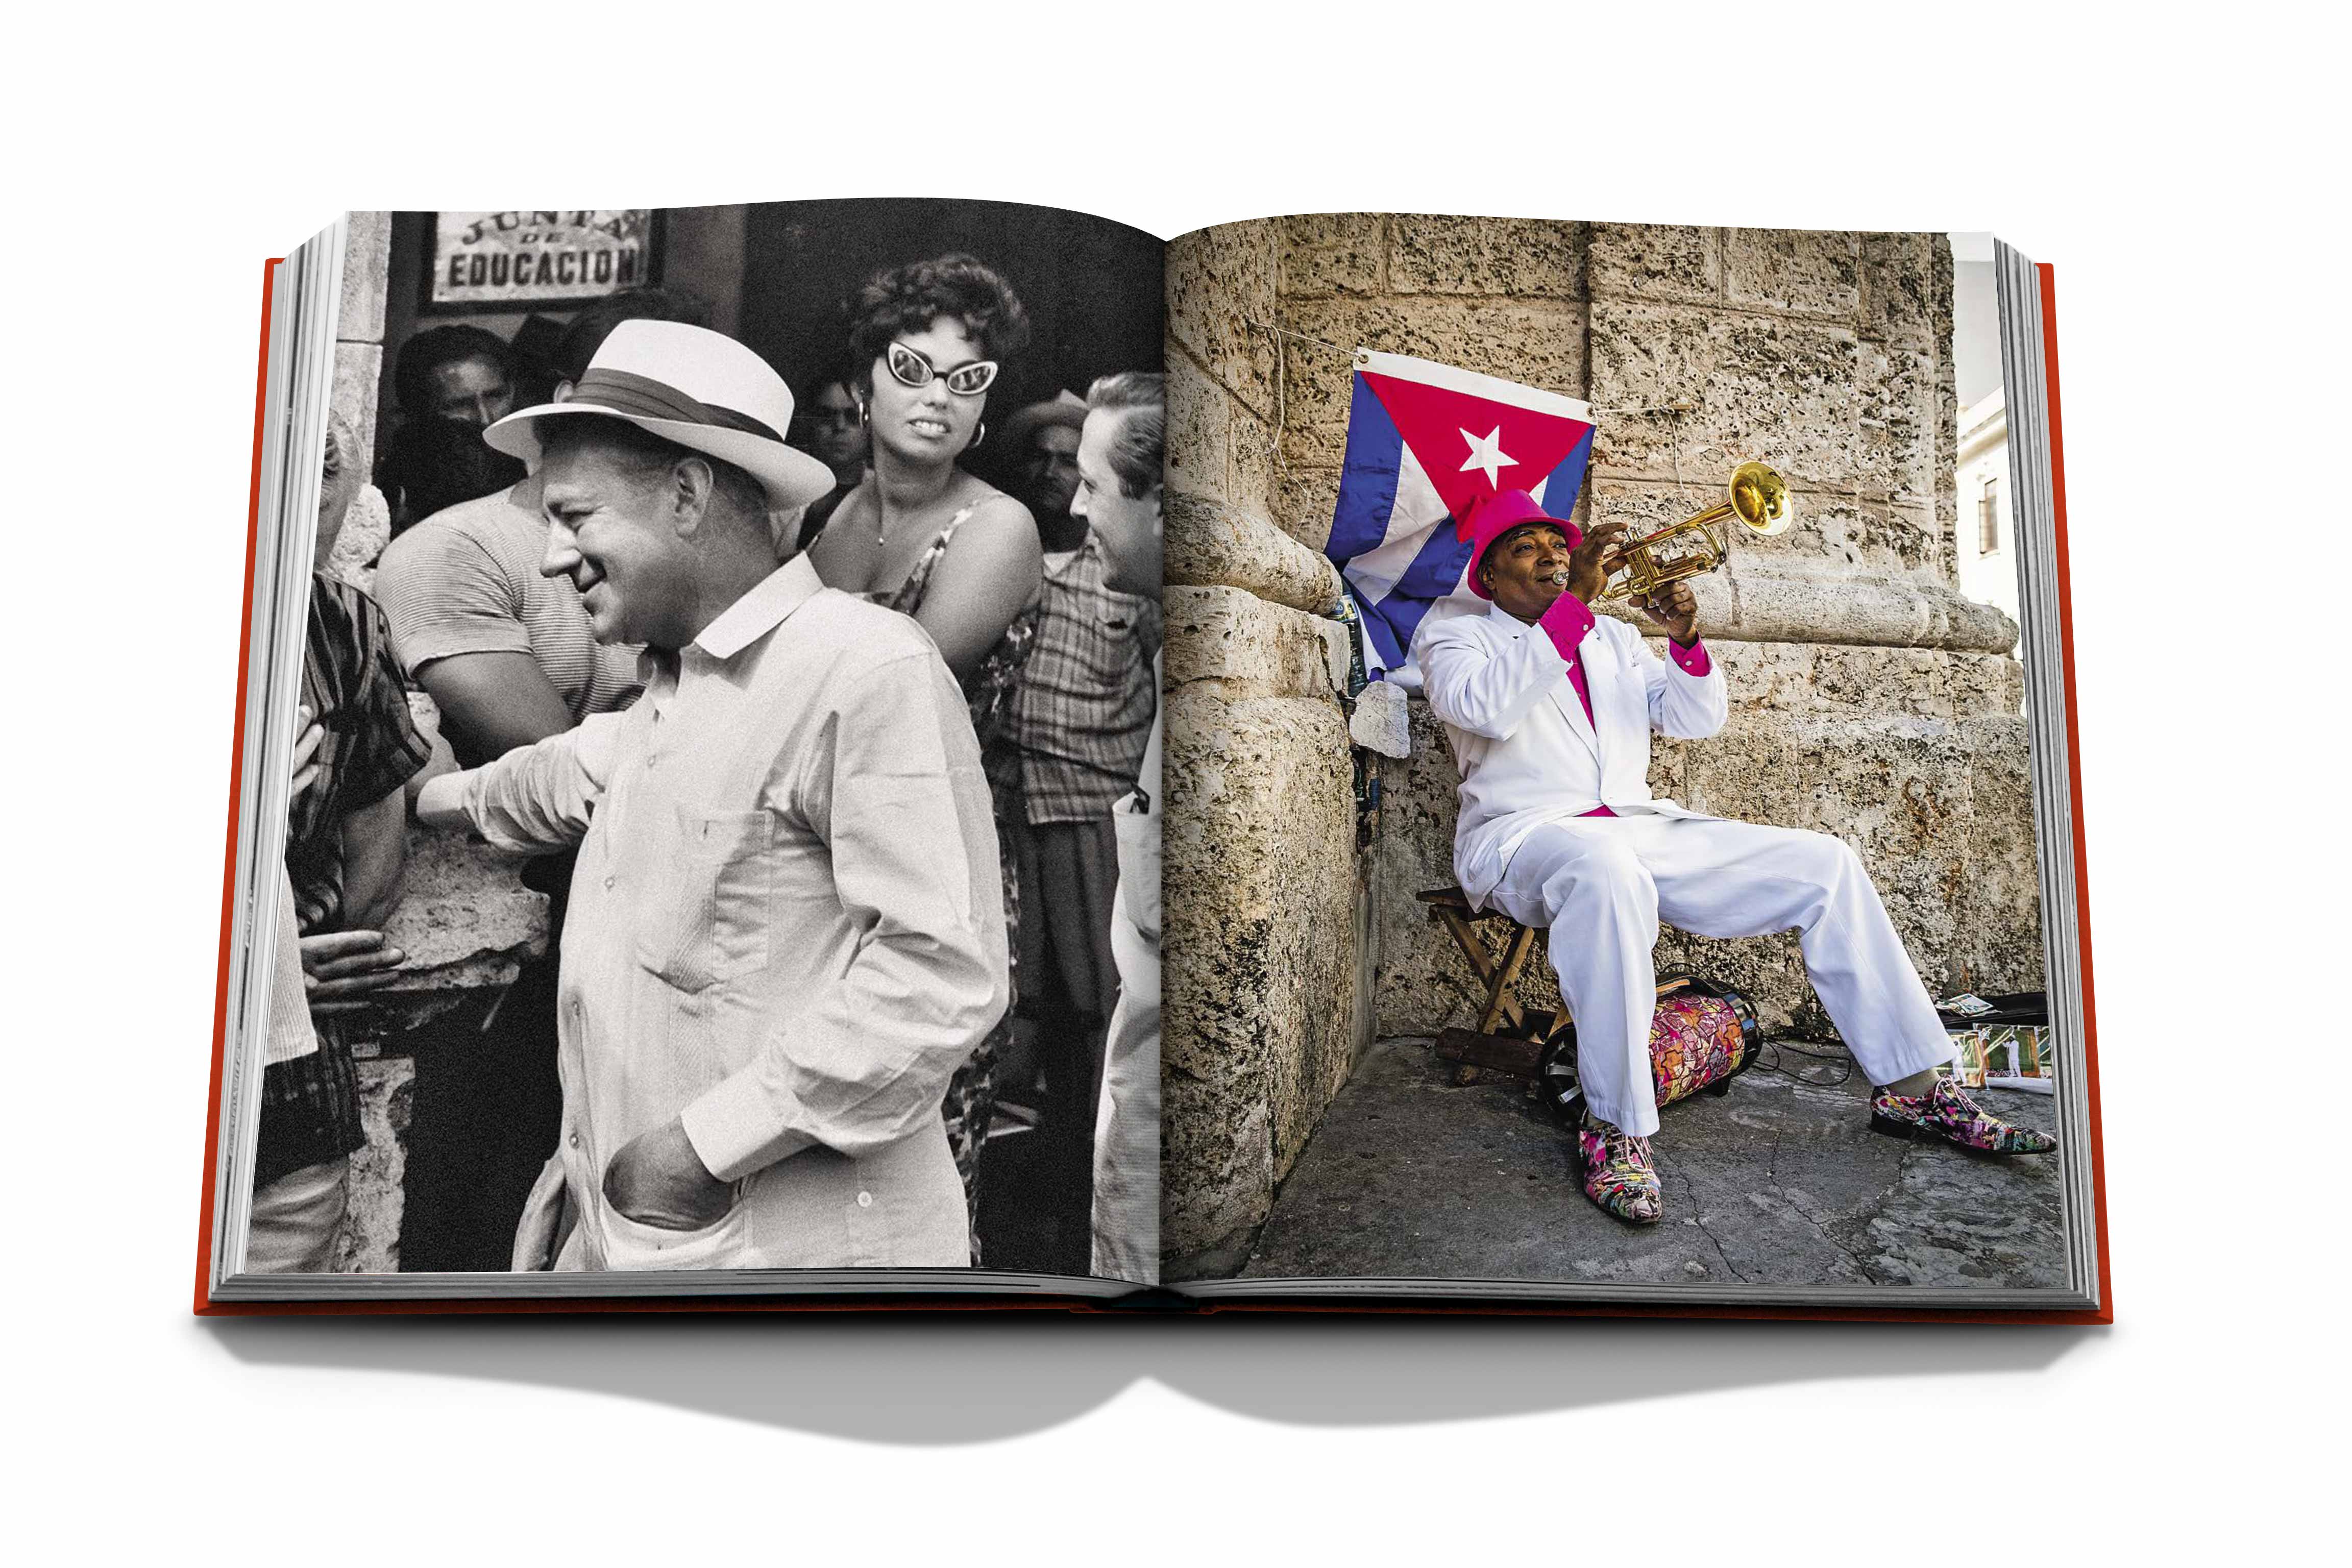 Havana Blues in  präsentiert im Onlineshop von KAQTU Design AG. Kunstgegenstände ist von Assouline